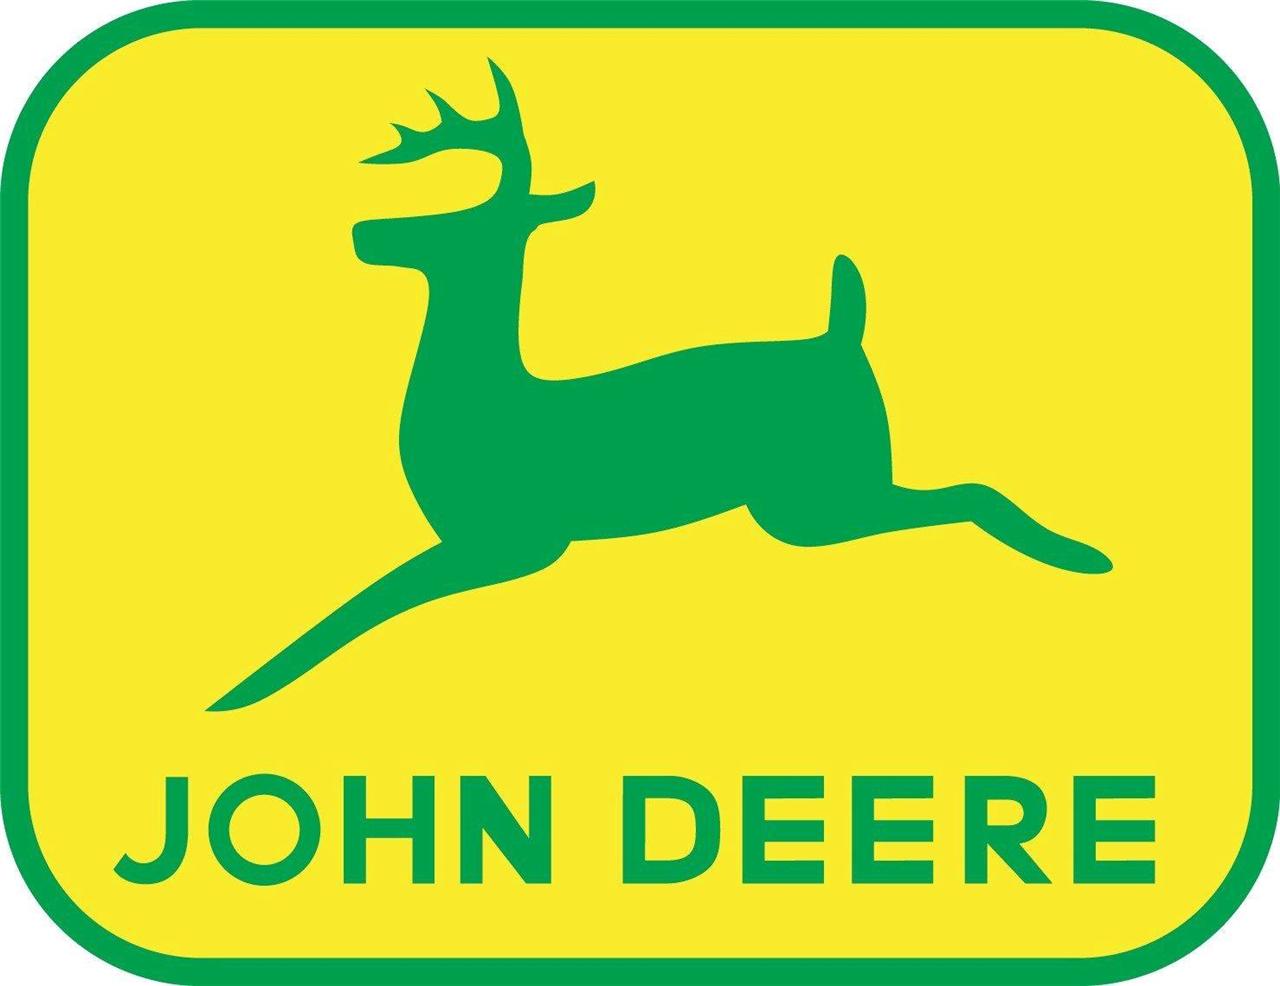 John Deere clipart #14, Download drawings